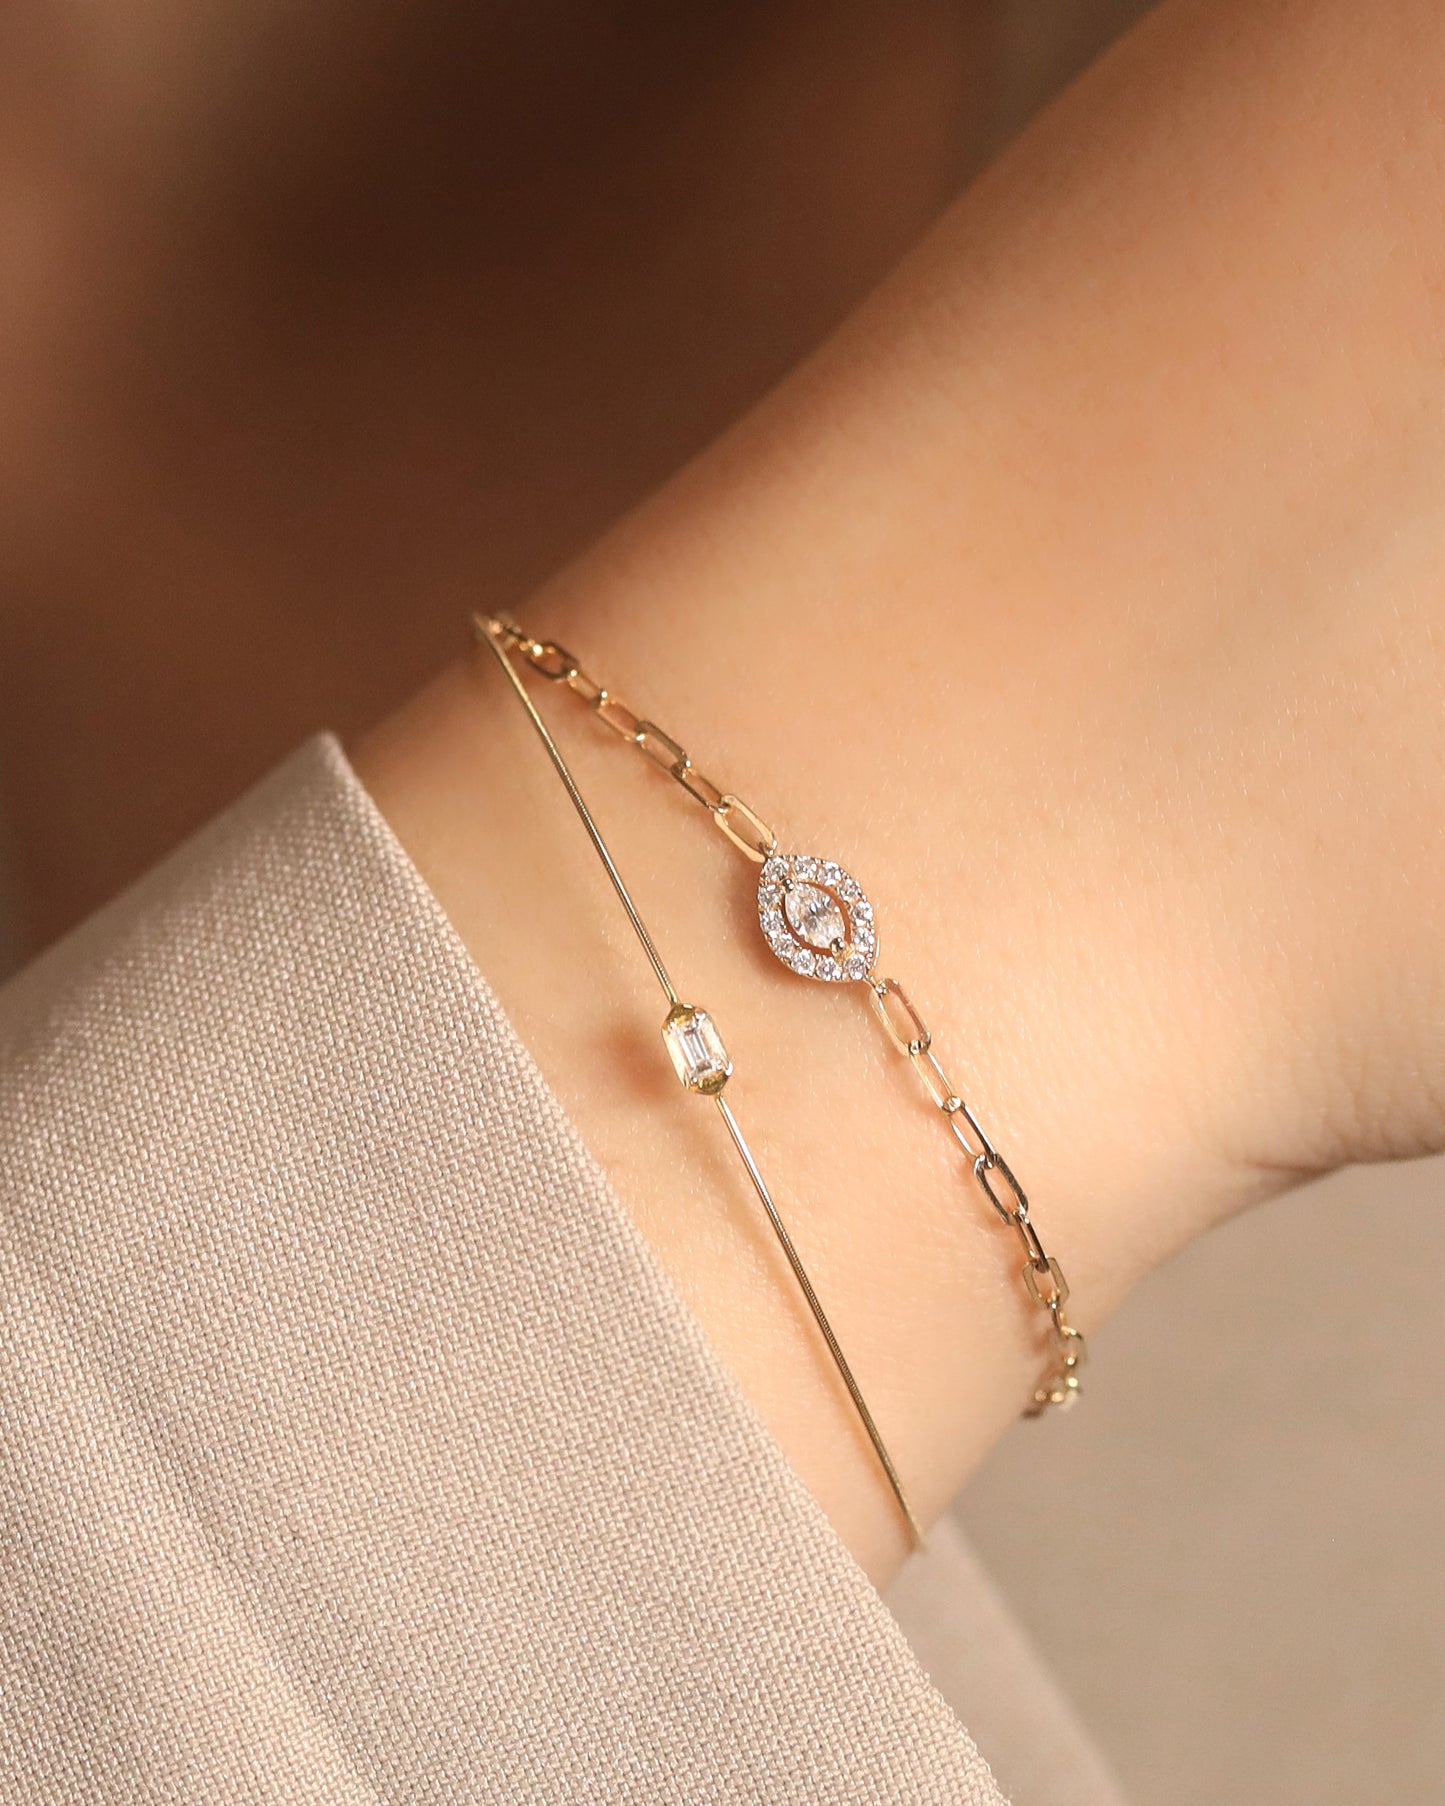 【Efforless Chic】Baguette Diamond Bracelet